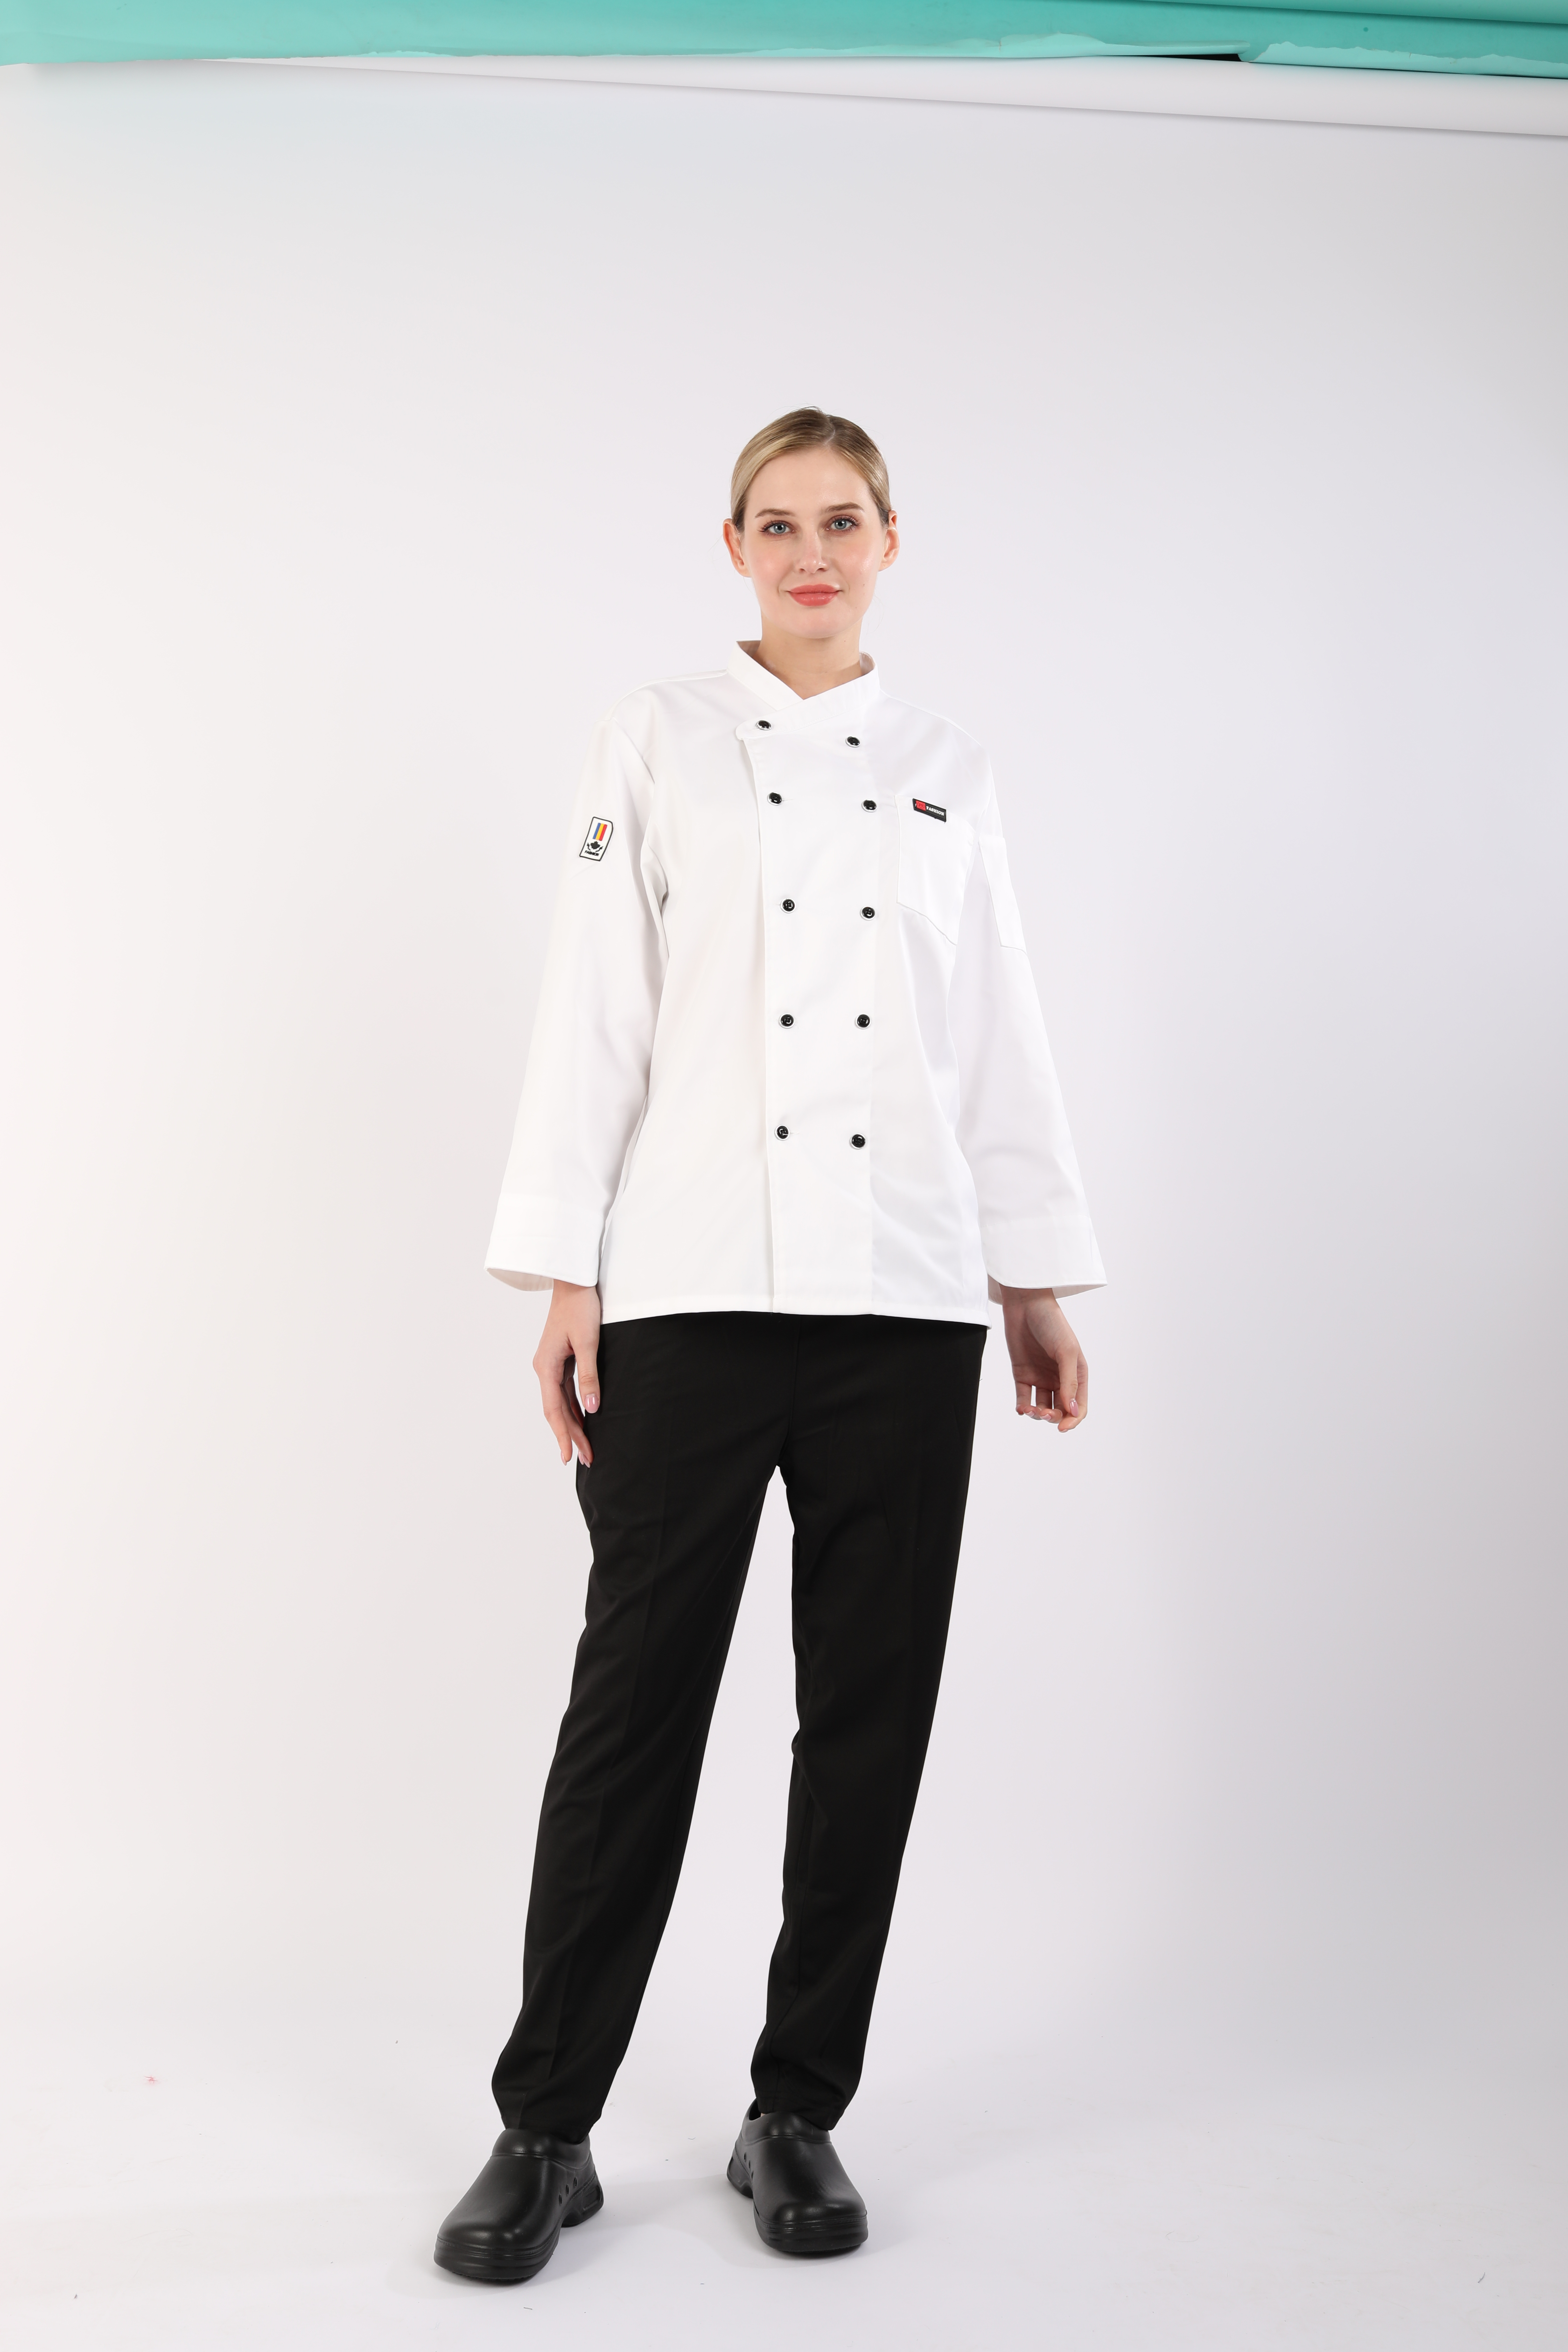 Chef Jacket LG-YBCW-1008